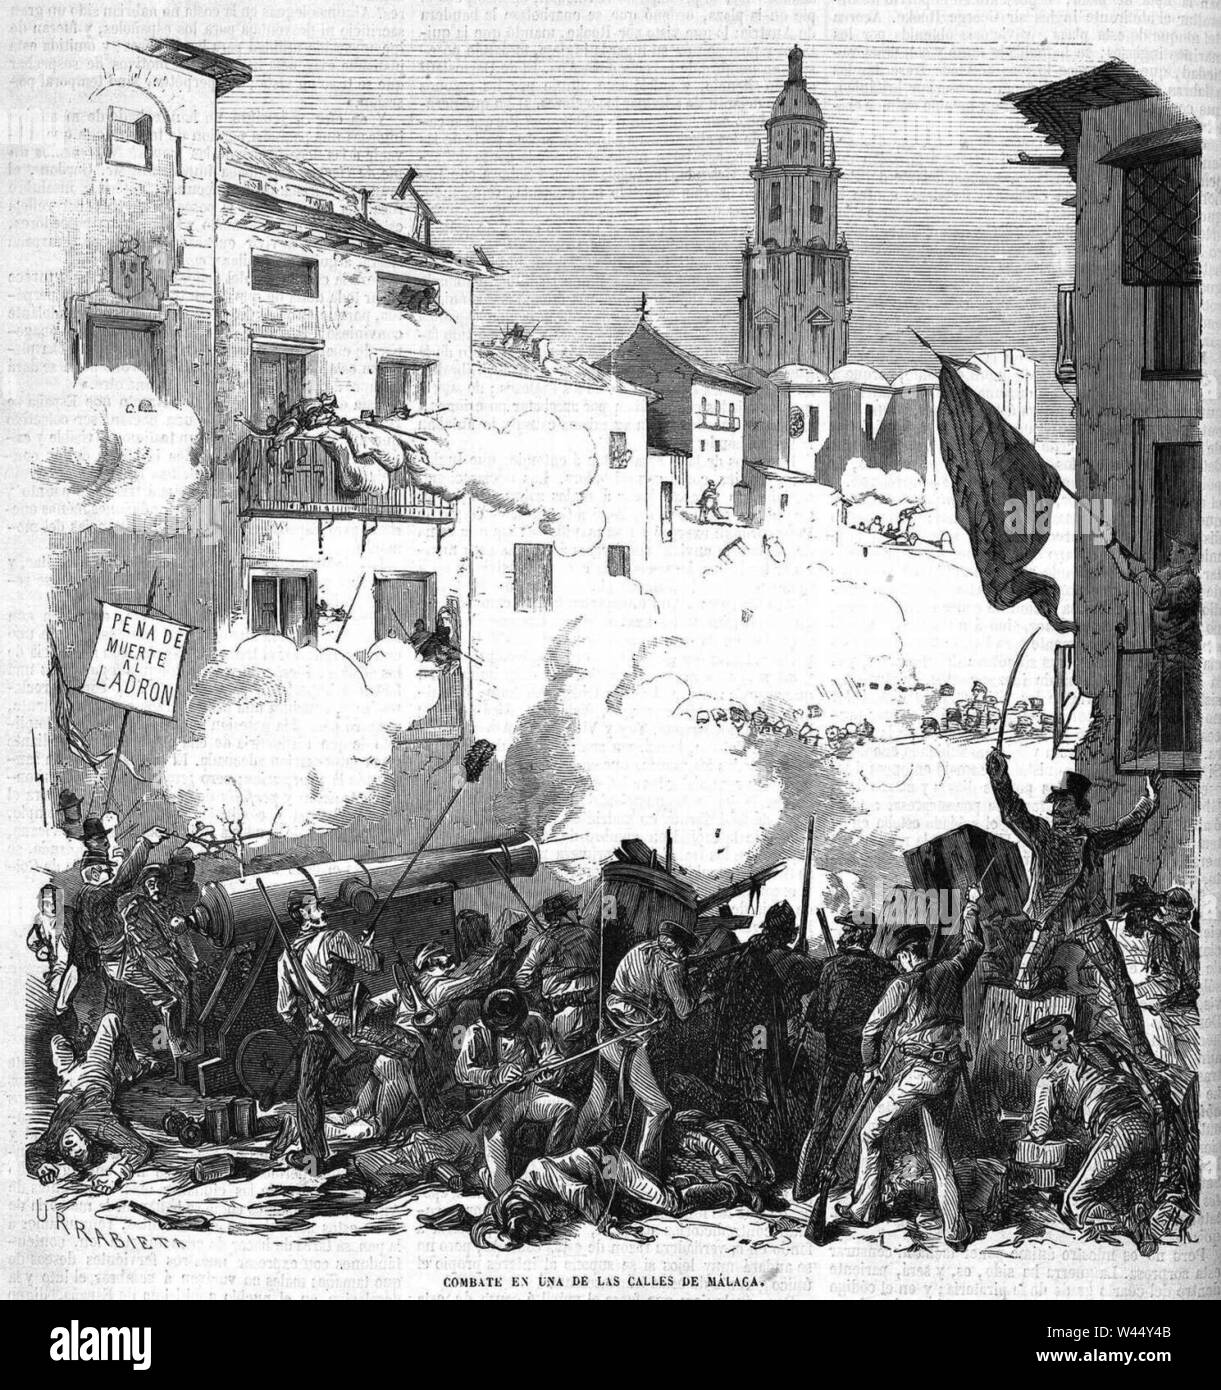 Combate en una de las calles de Málaga, de Urrabieta. Stock Photo